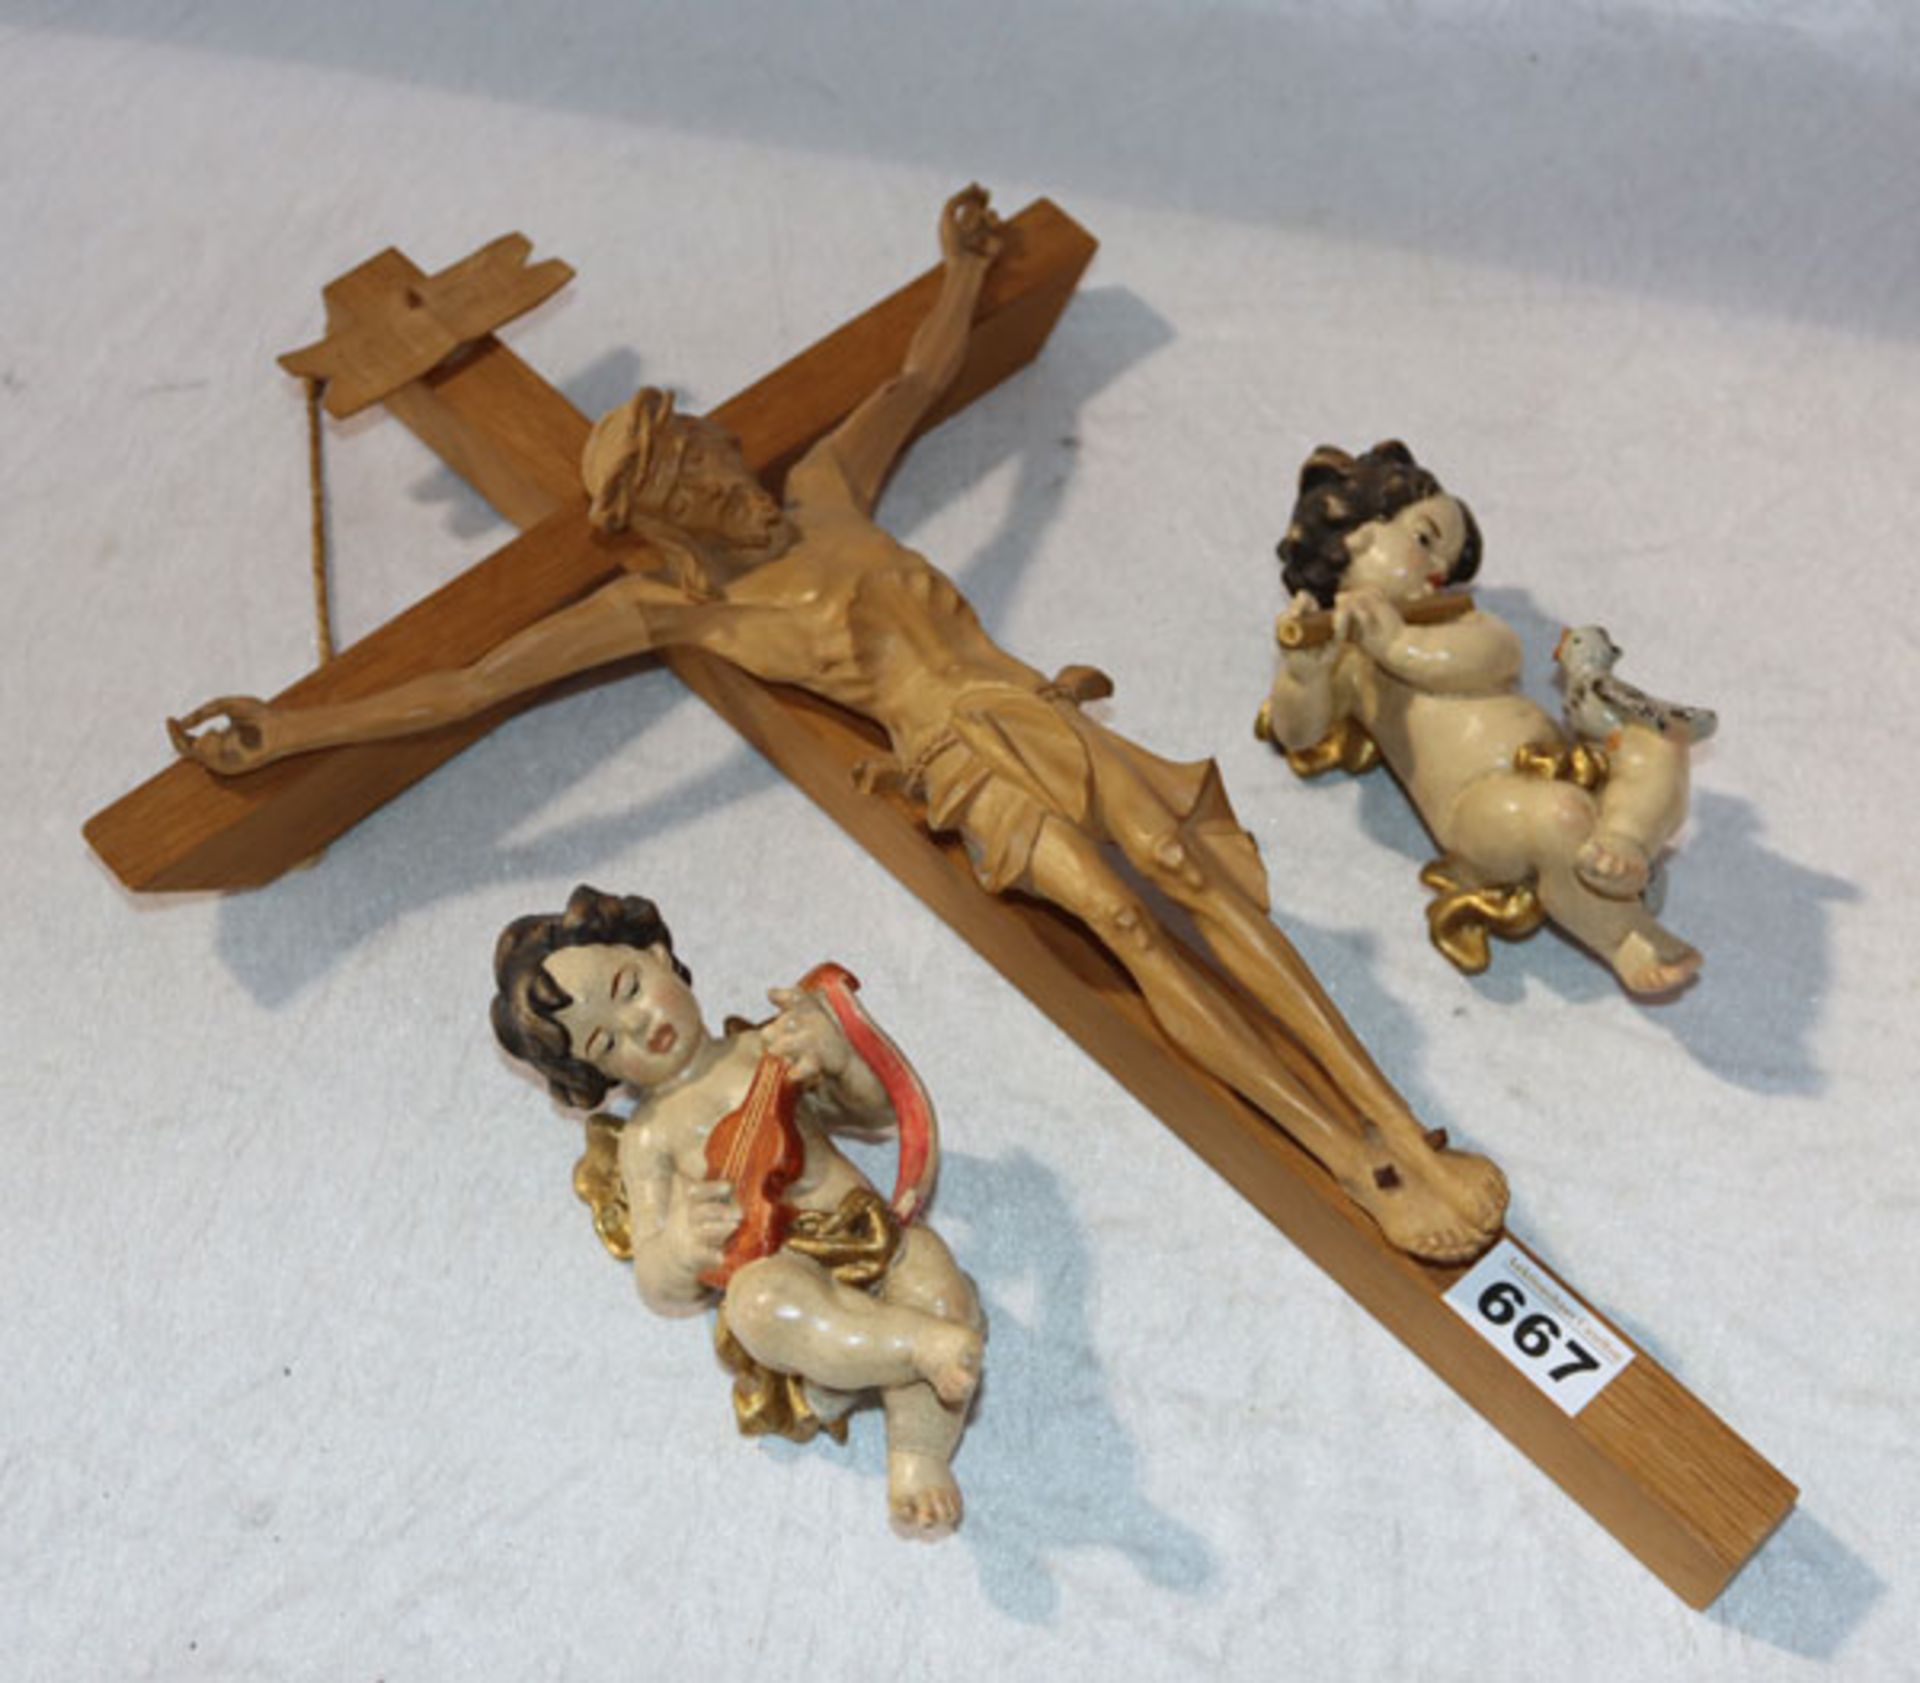 Holzkreuz mit Korpus Christi, H 50 cm x 32 cm, und 2 'Musizierende Engel', farbig gefaßt, H 17 cm,